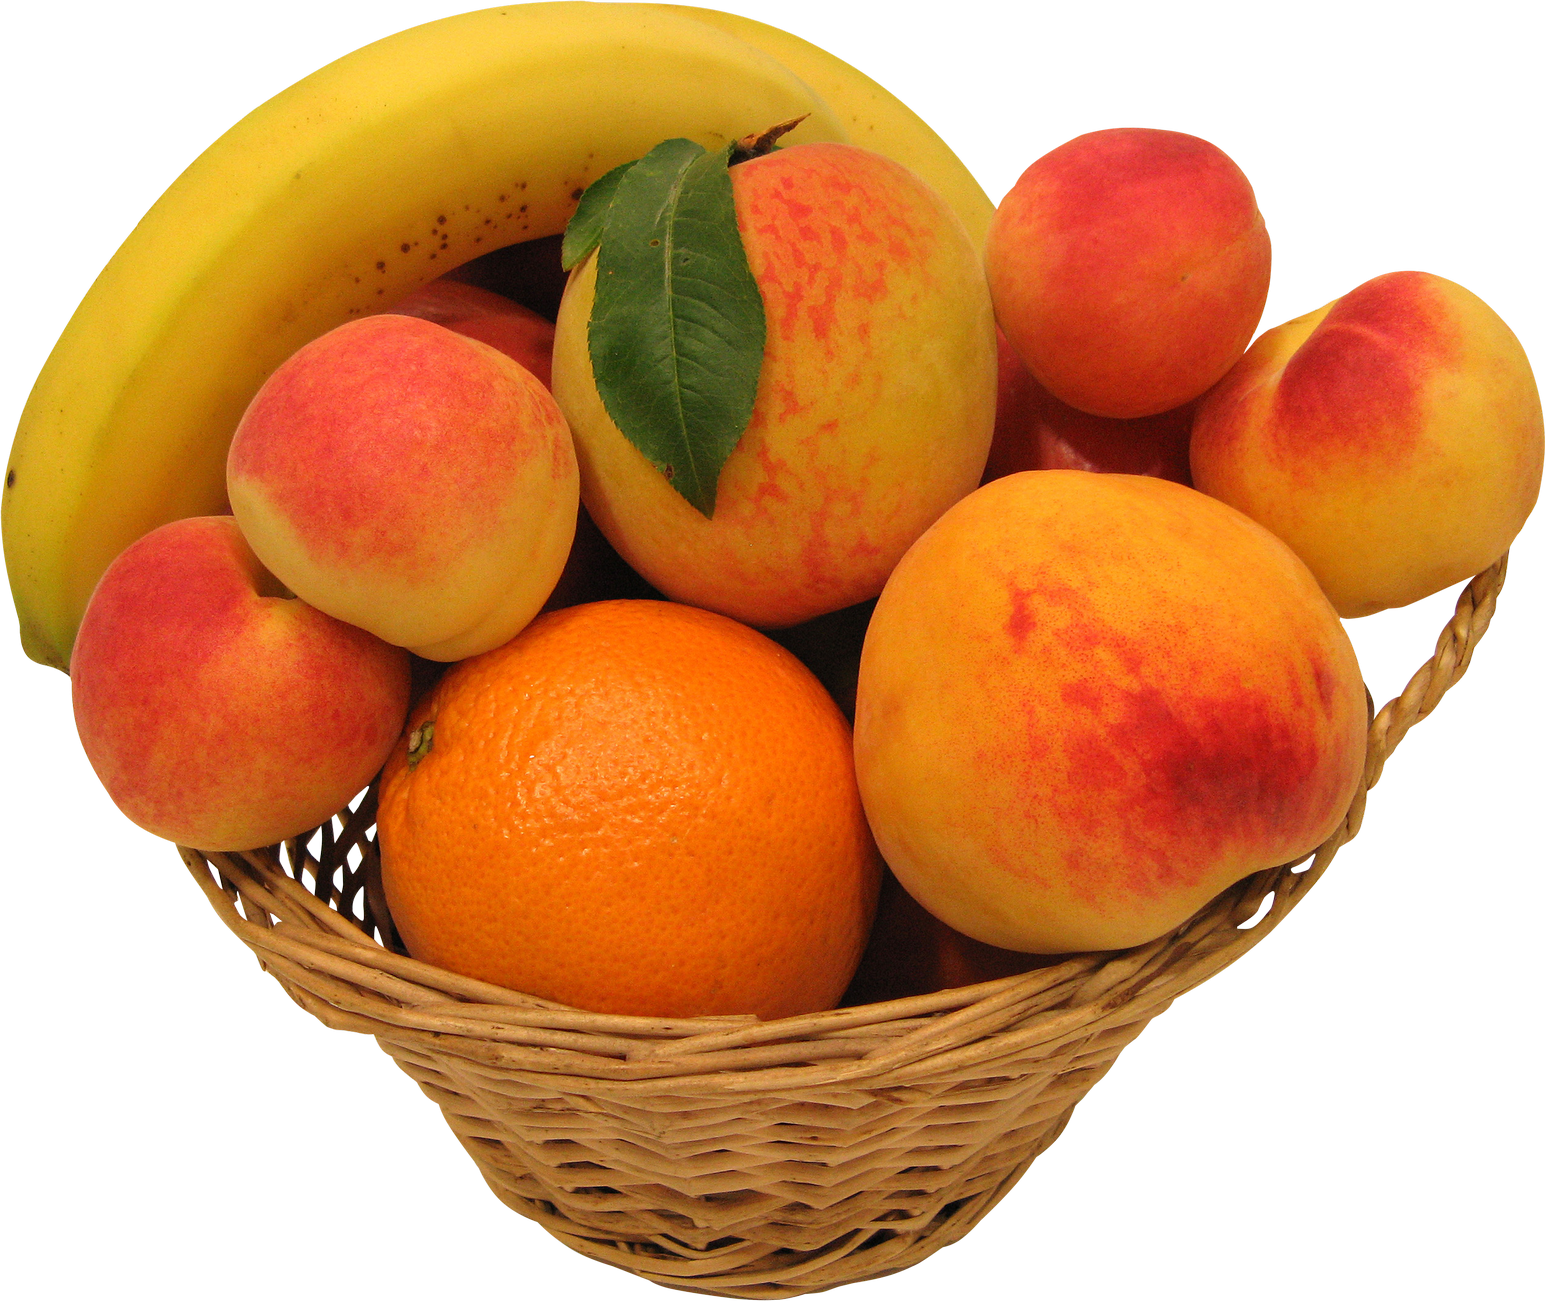 Peach - Alimentos De La Region Y De Temporada (1546x1301)